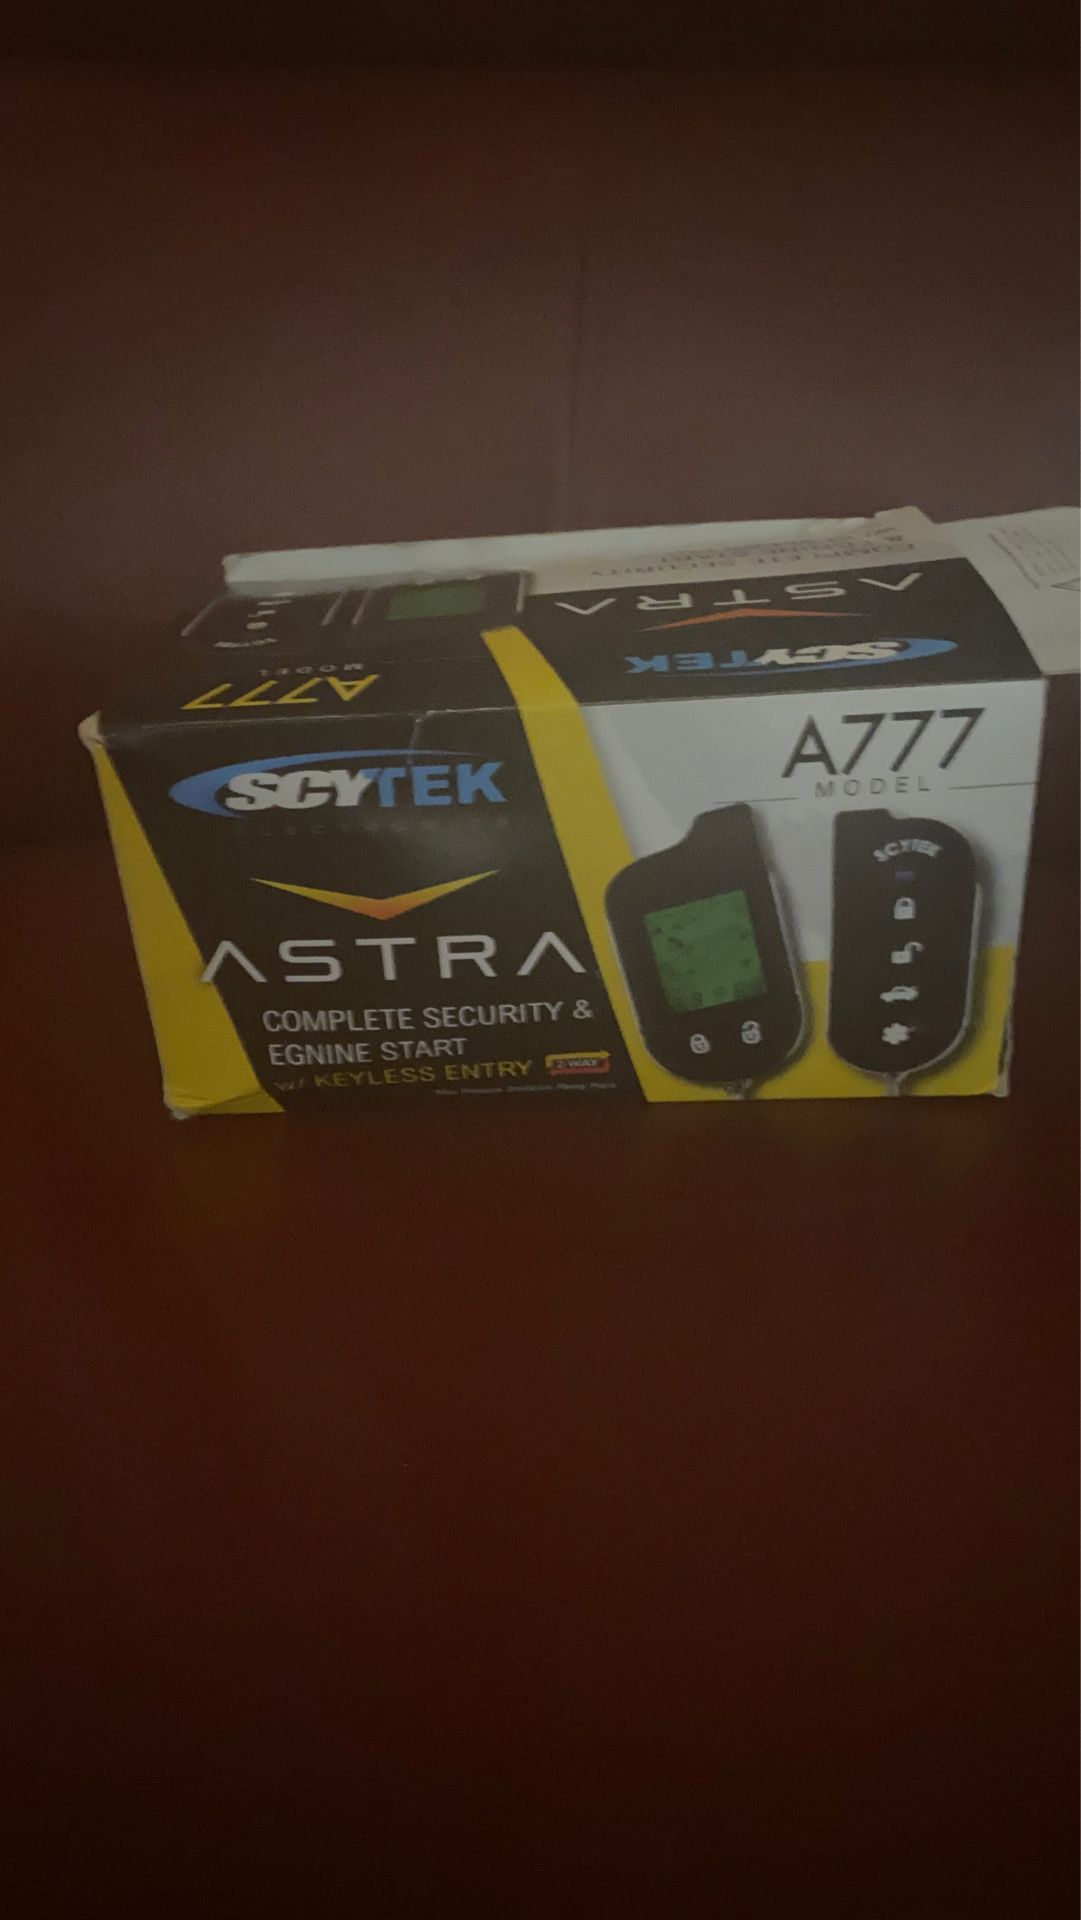 Scytek A777 model alarm